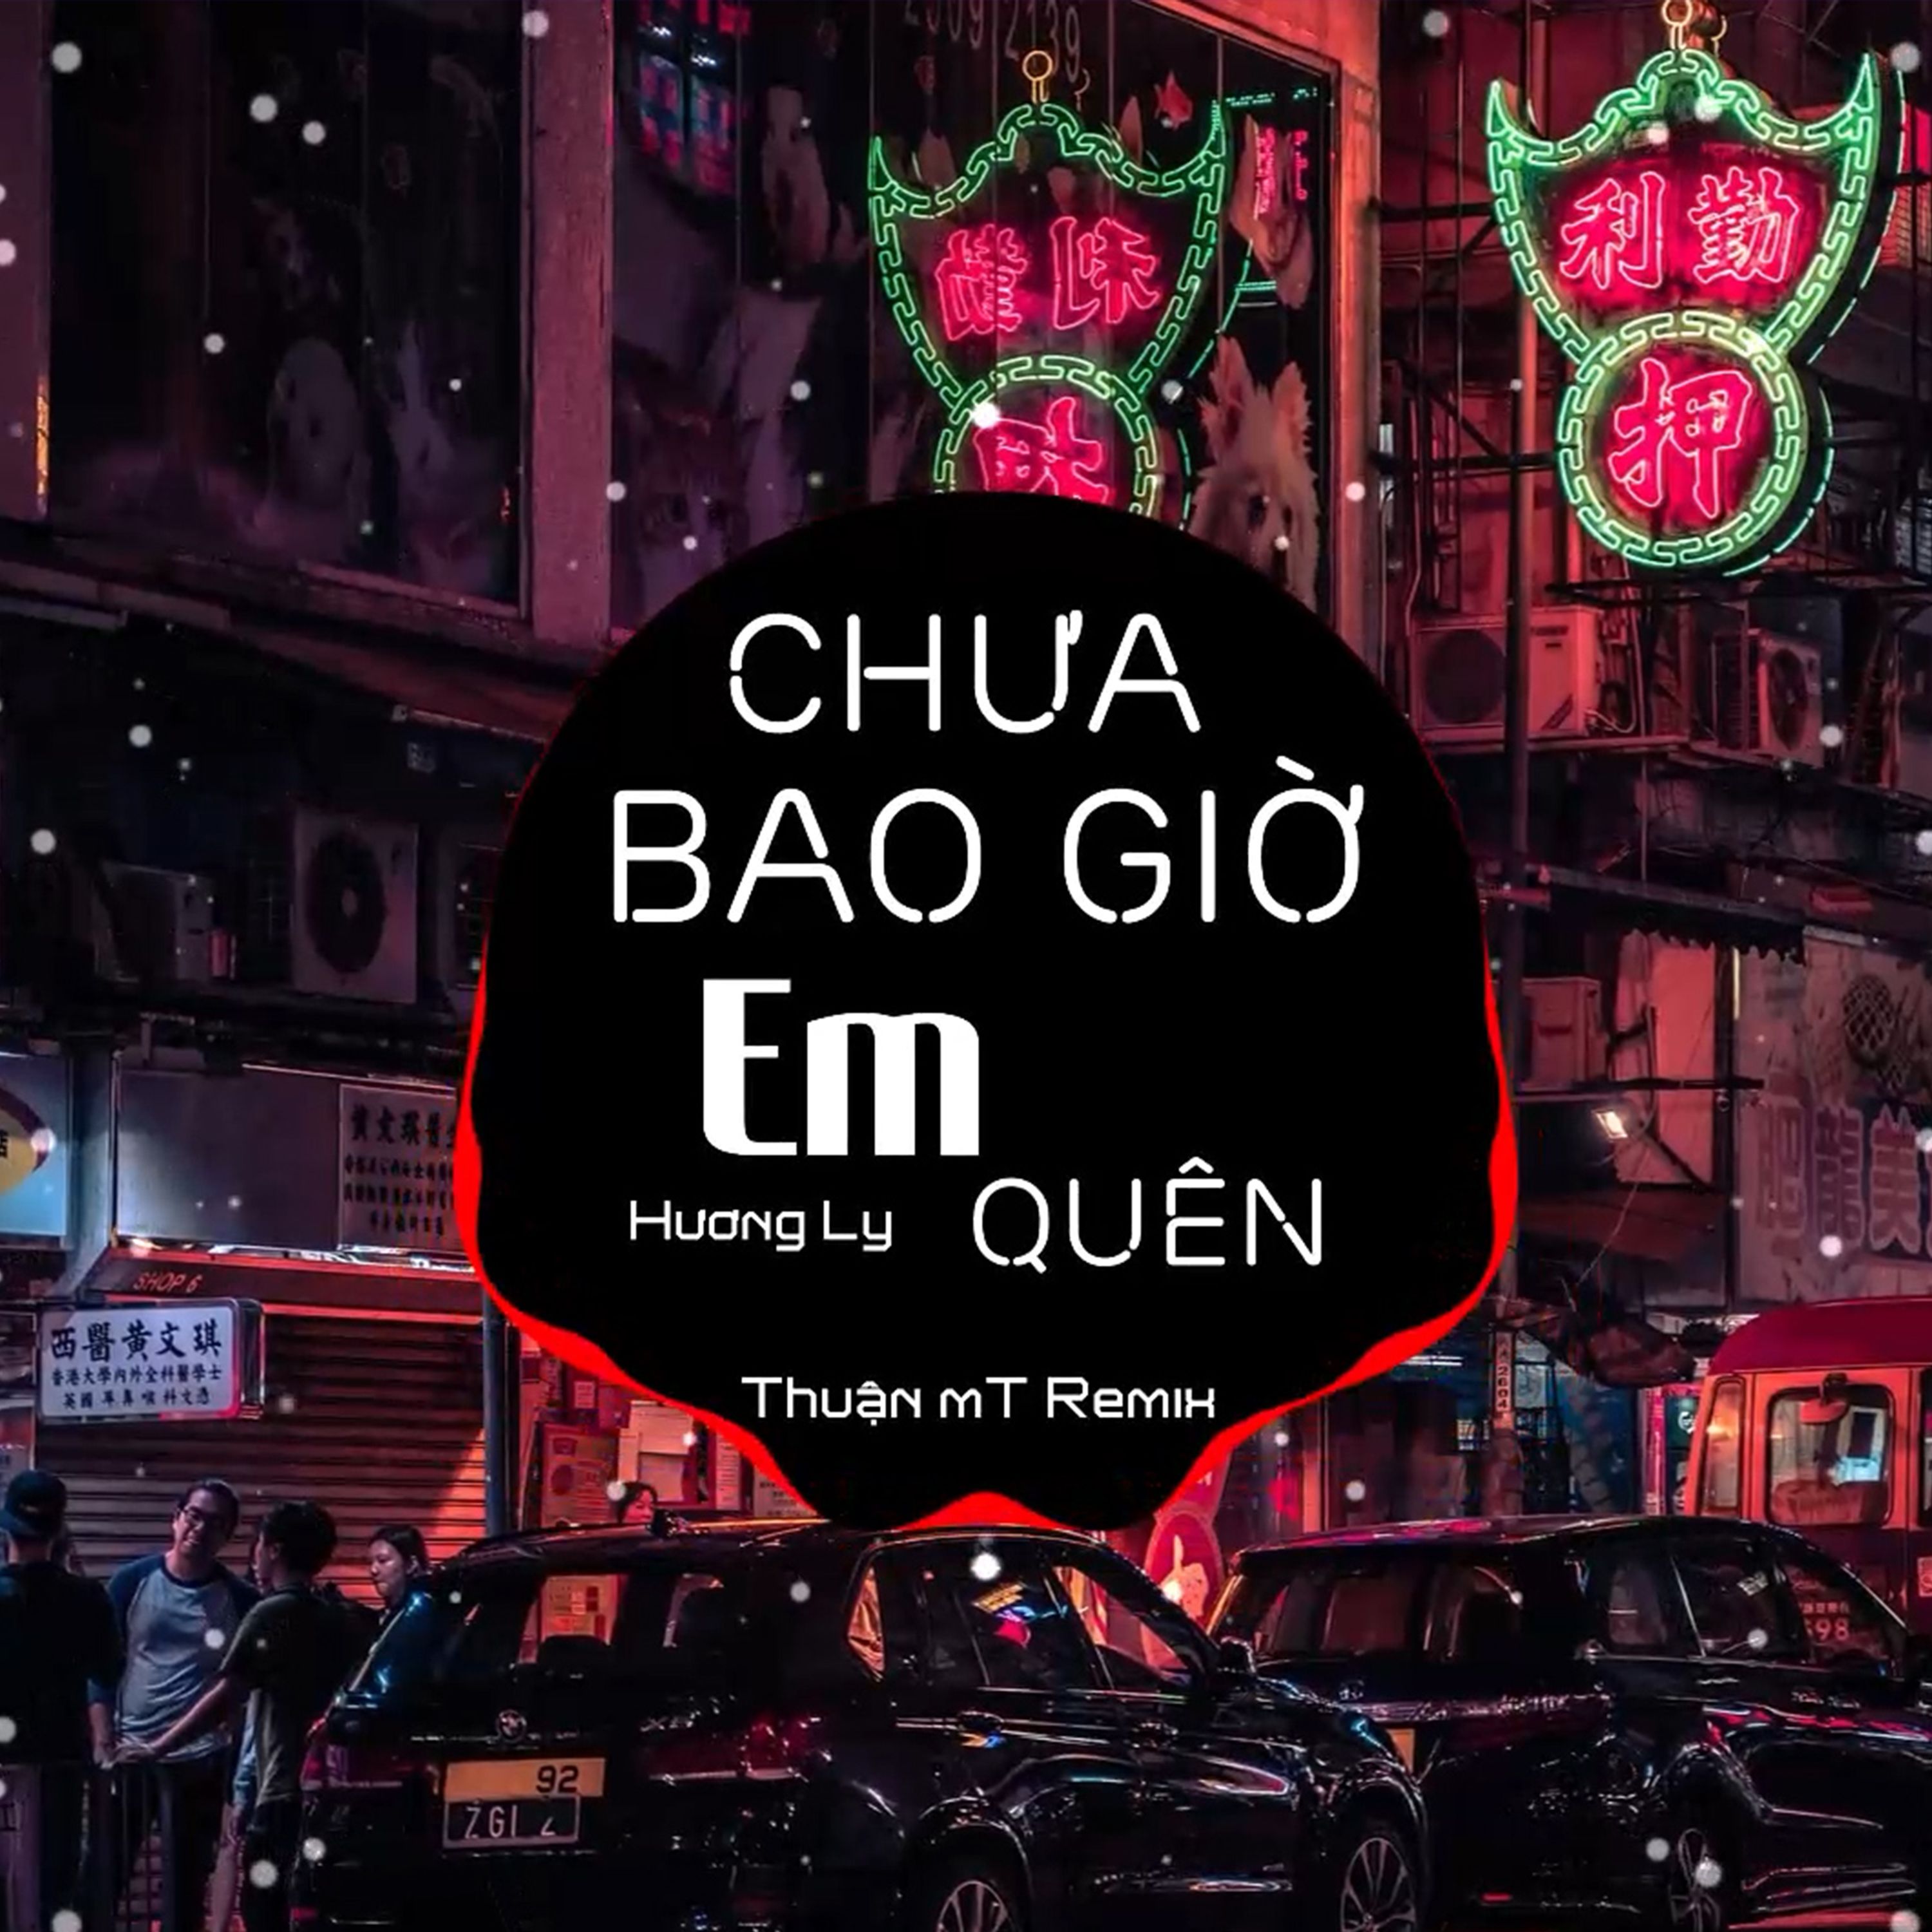 Ներբեռնե Chưa Bao Giờ Em Quên ( Thuận mT Remix ) Ver 2 - Hương Ly | Nhạc Nền Chill Phiêu Nhất TikTok  2021